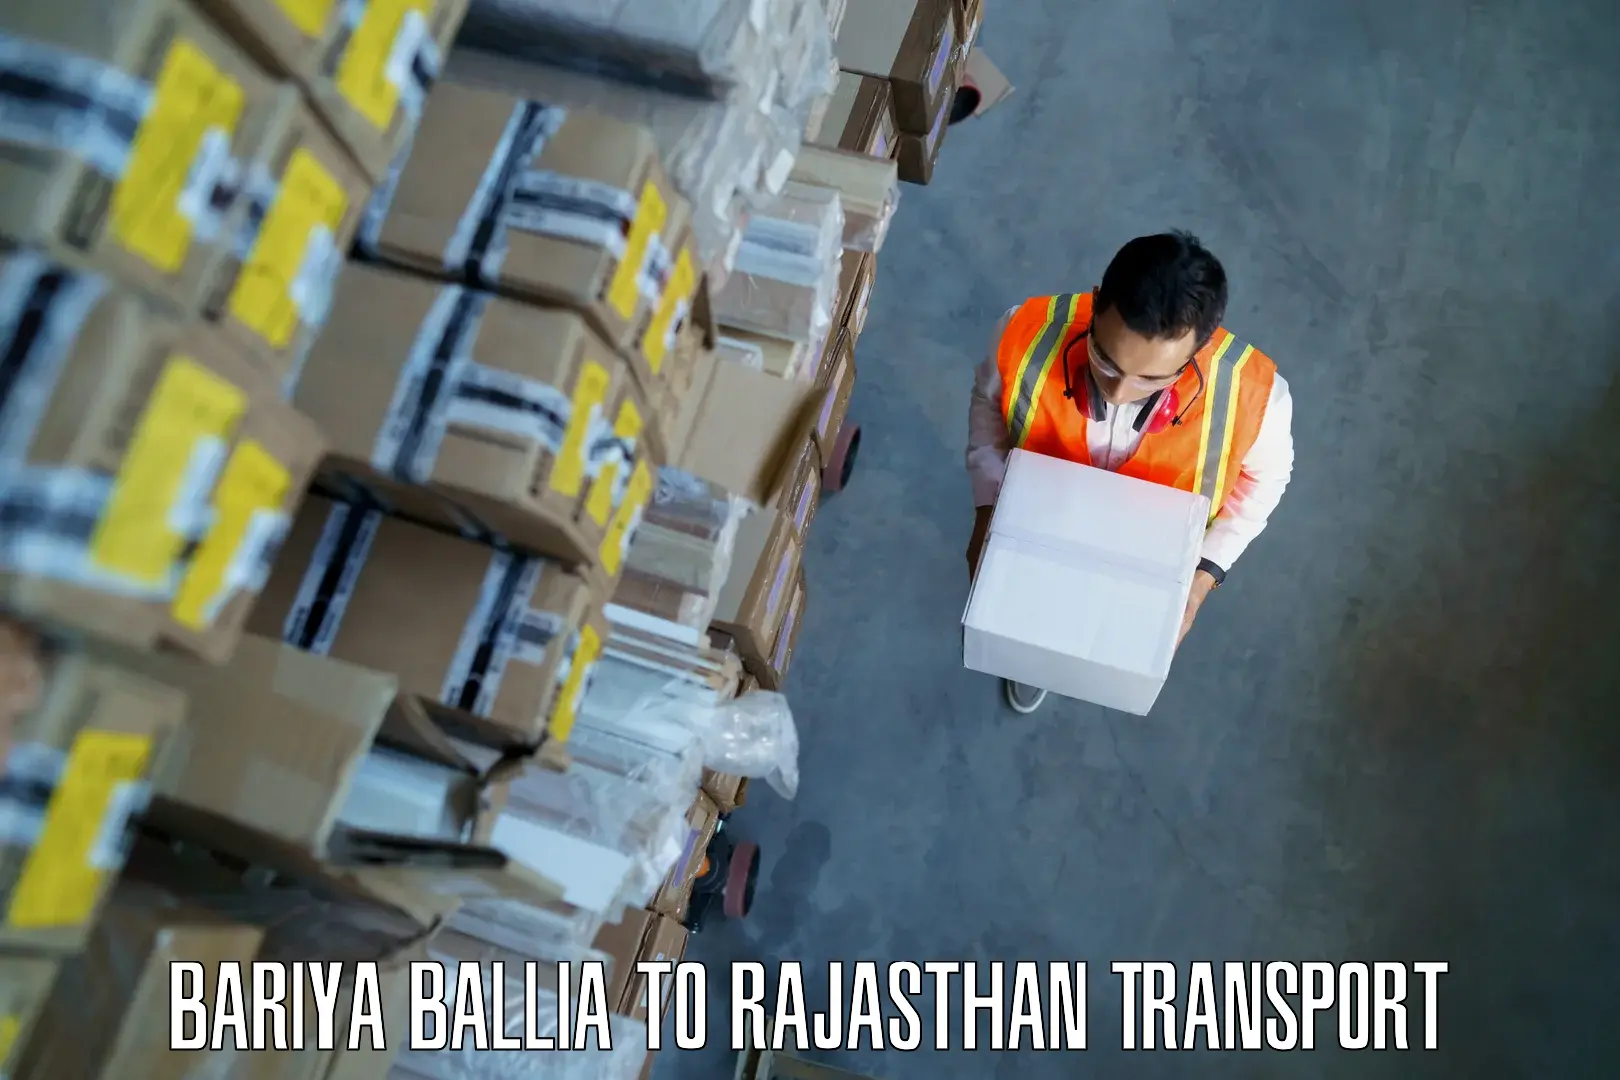 Cargo train transport services in Bariya Ballia to Jhunjhunu